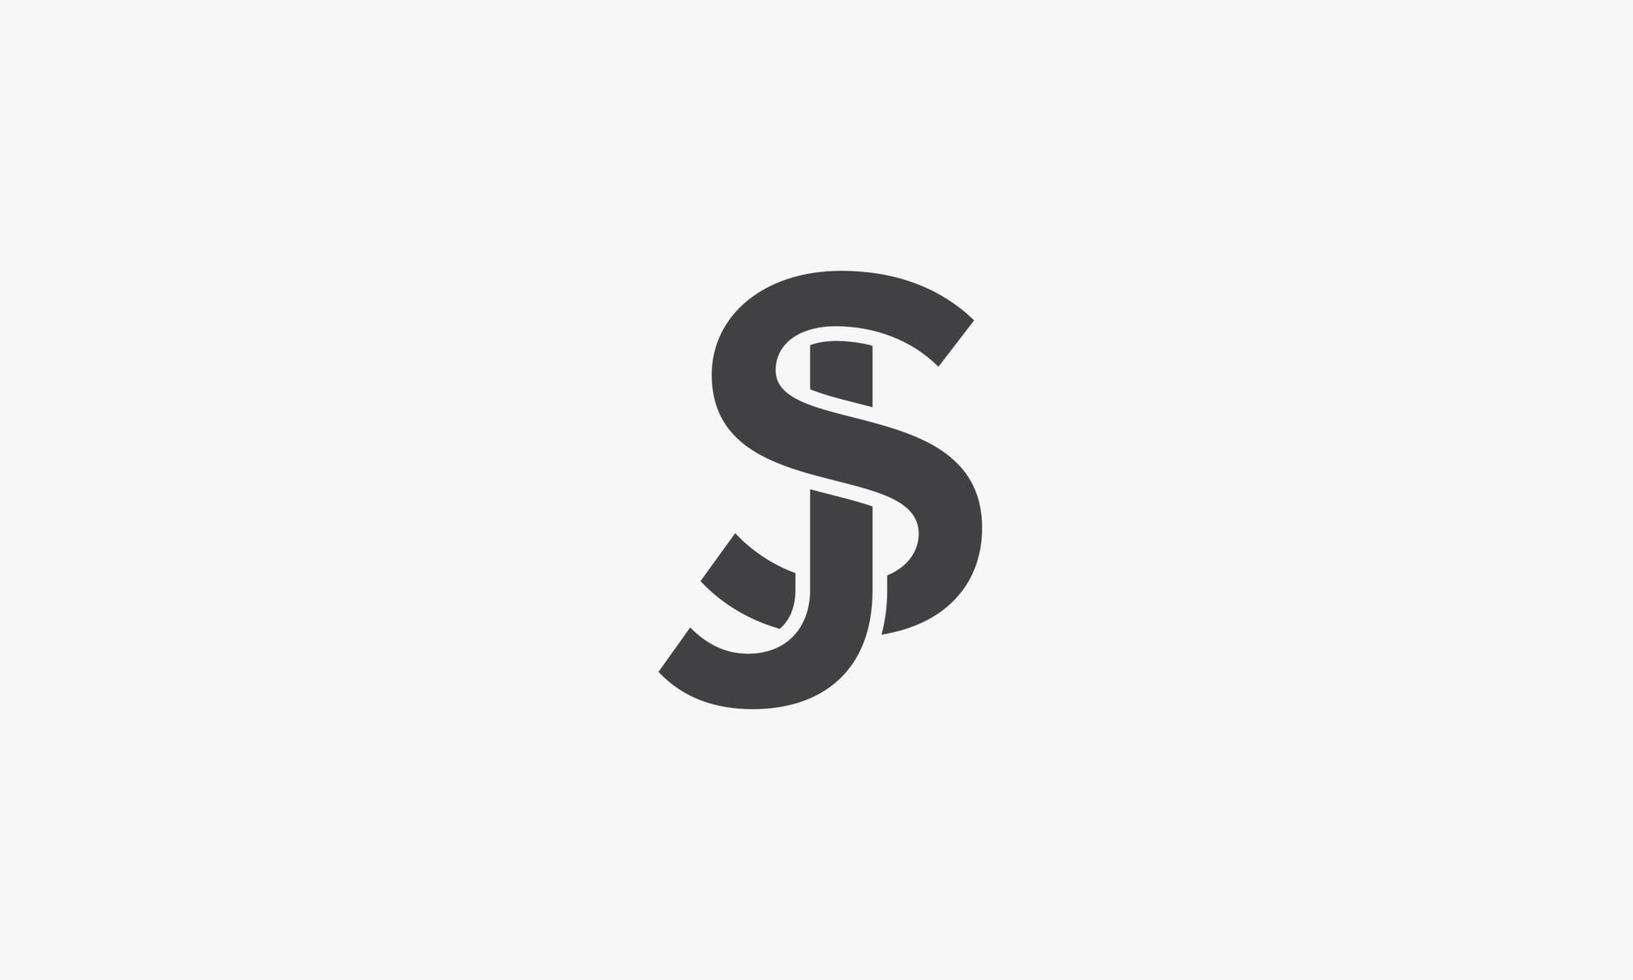 sj o js lettera logo concetto isolato su sfondo bianco vettore